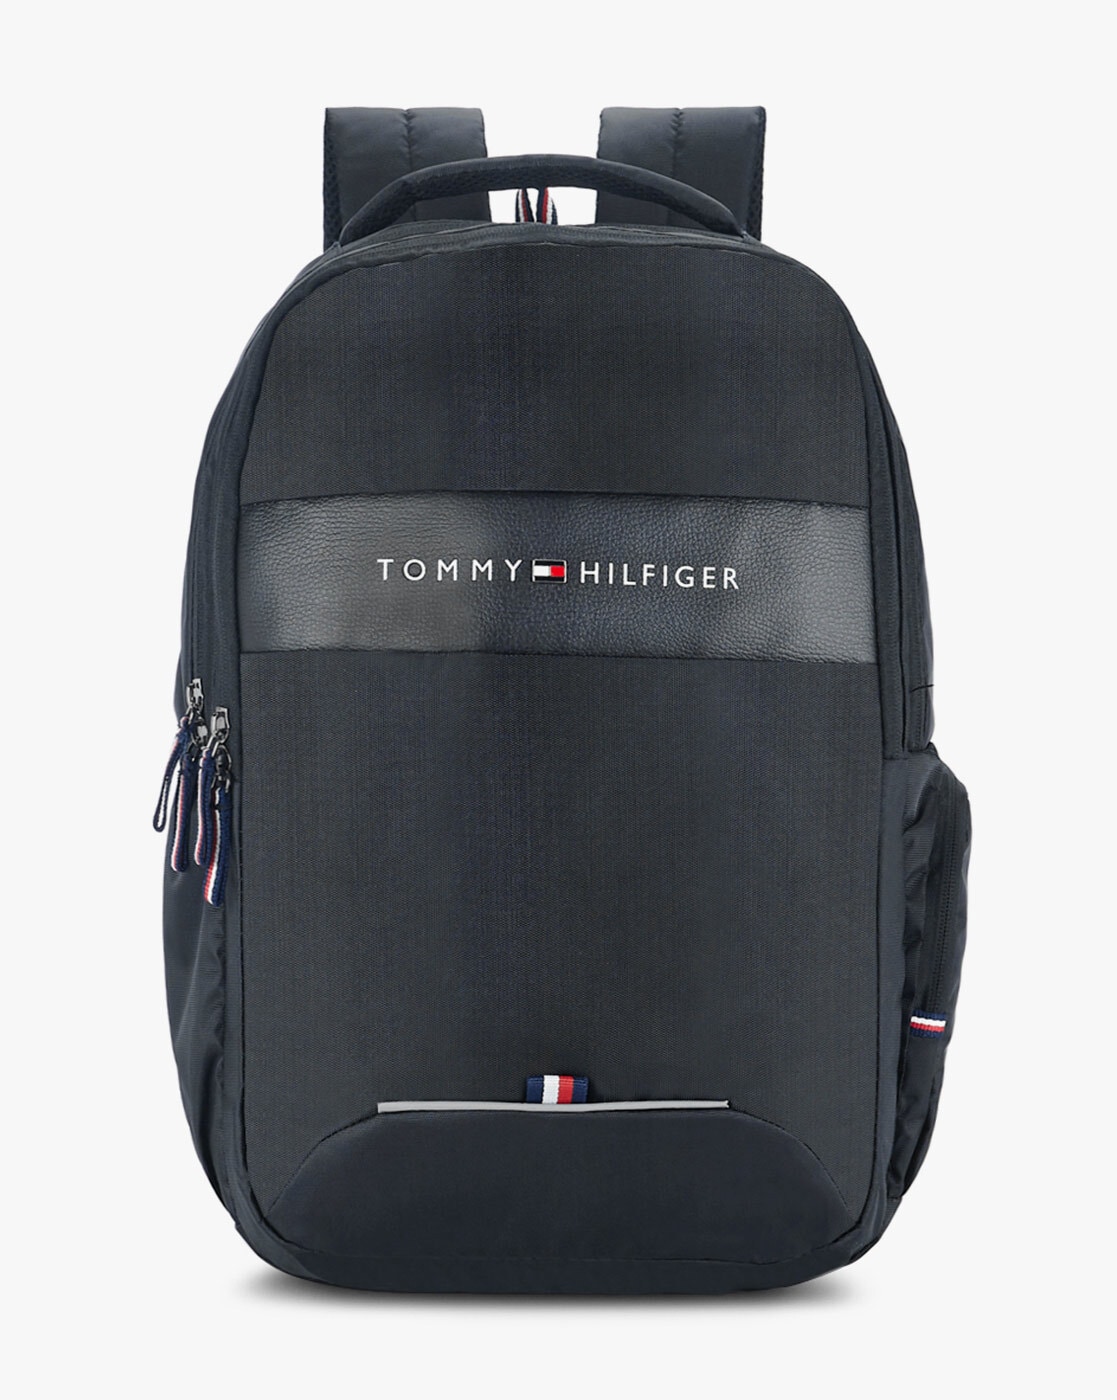 tommy hilfiger black backpack